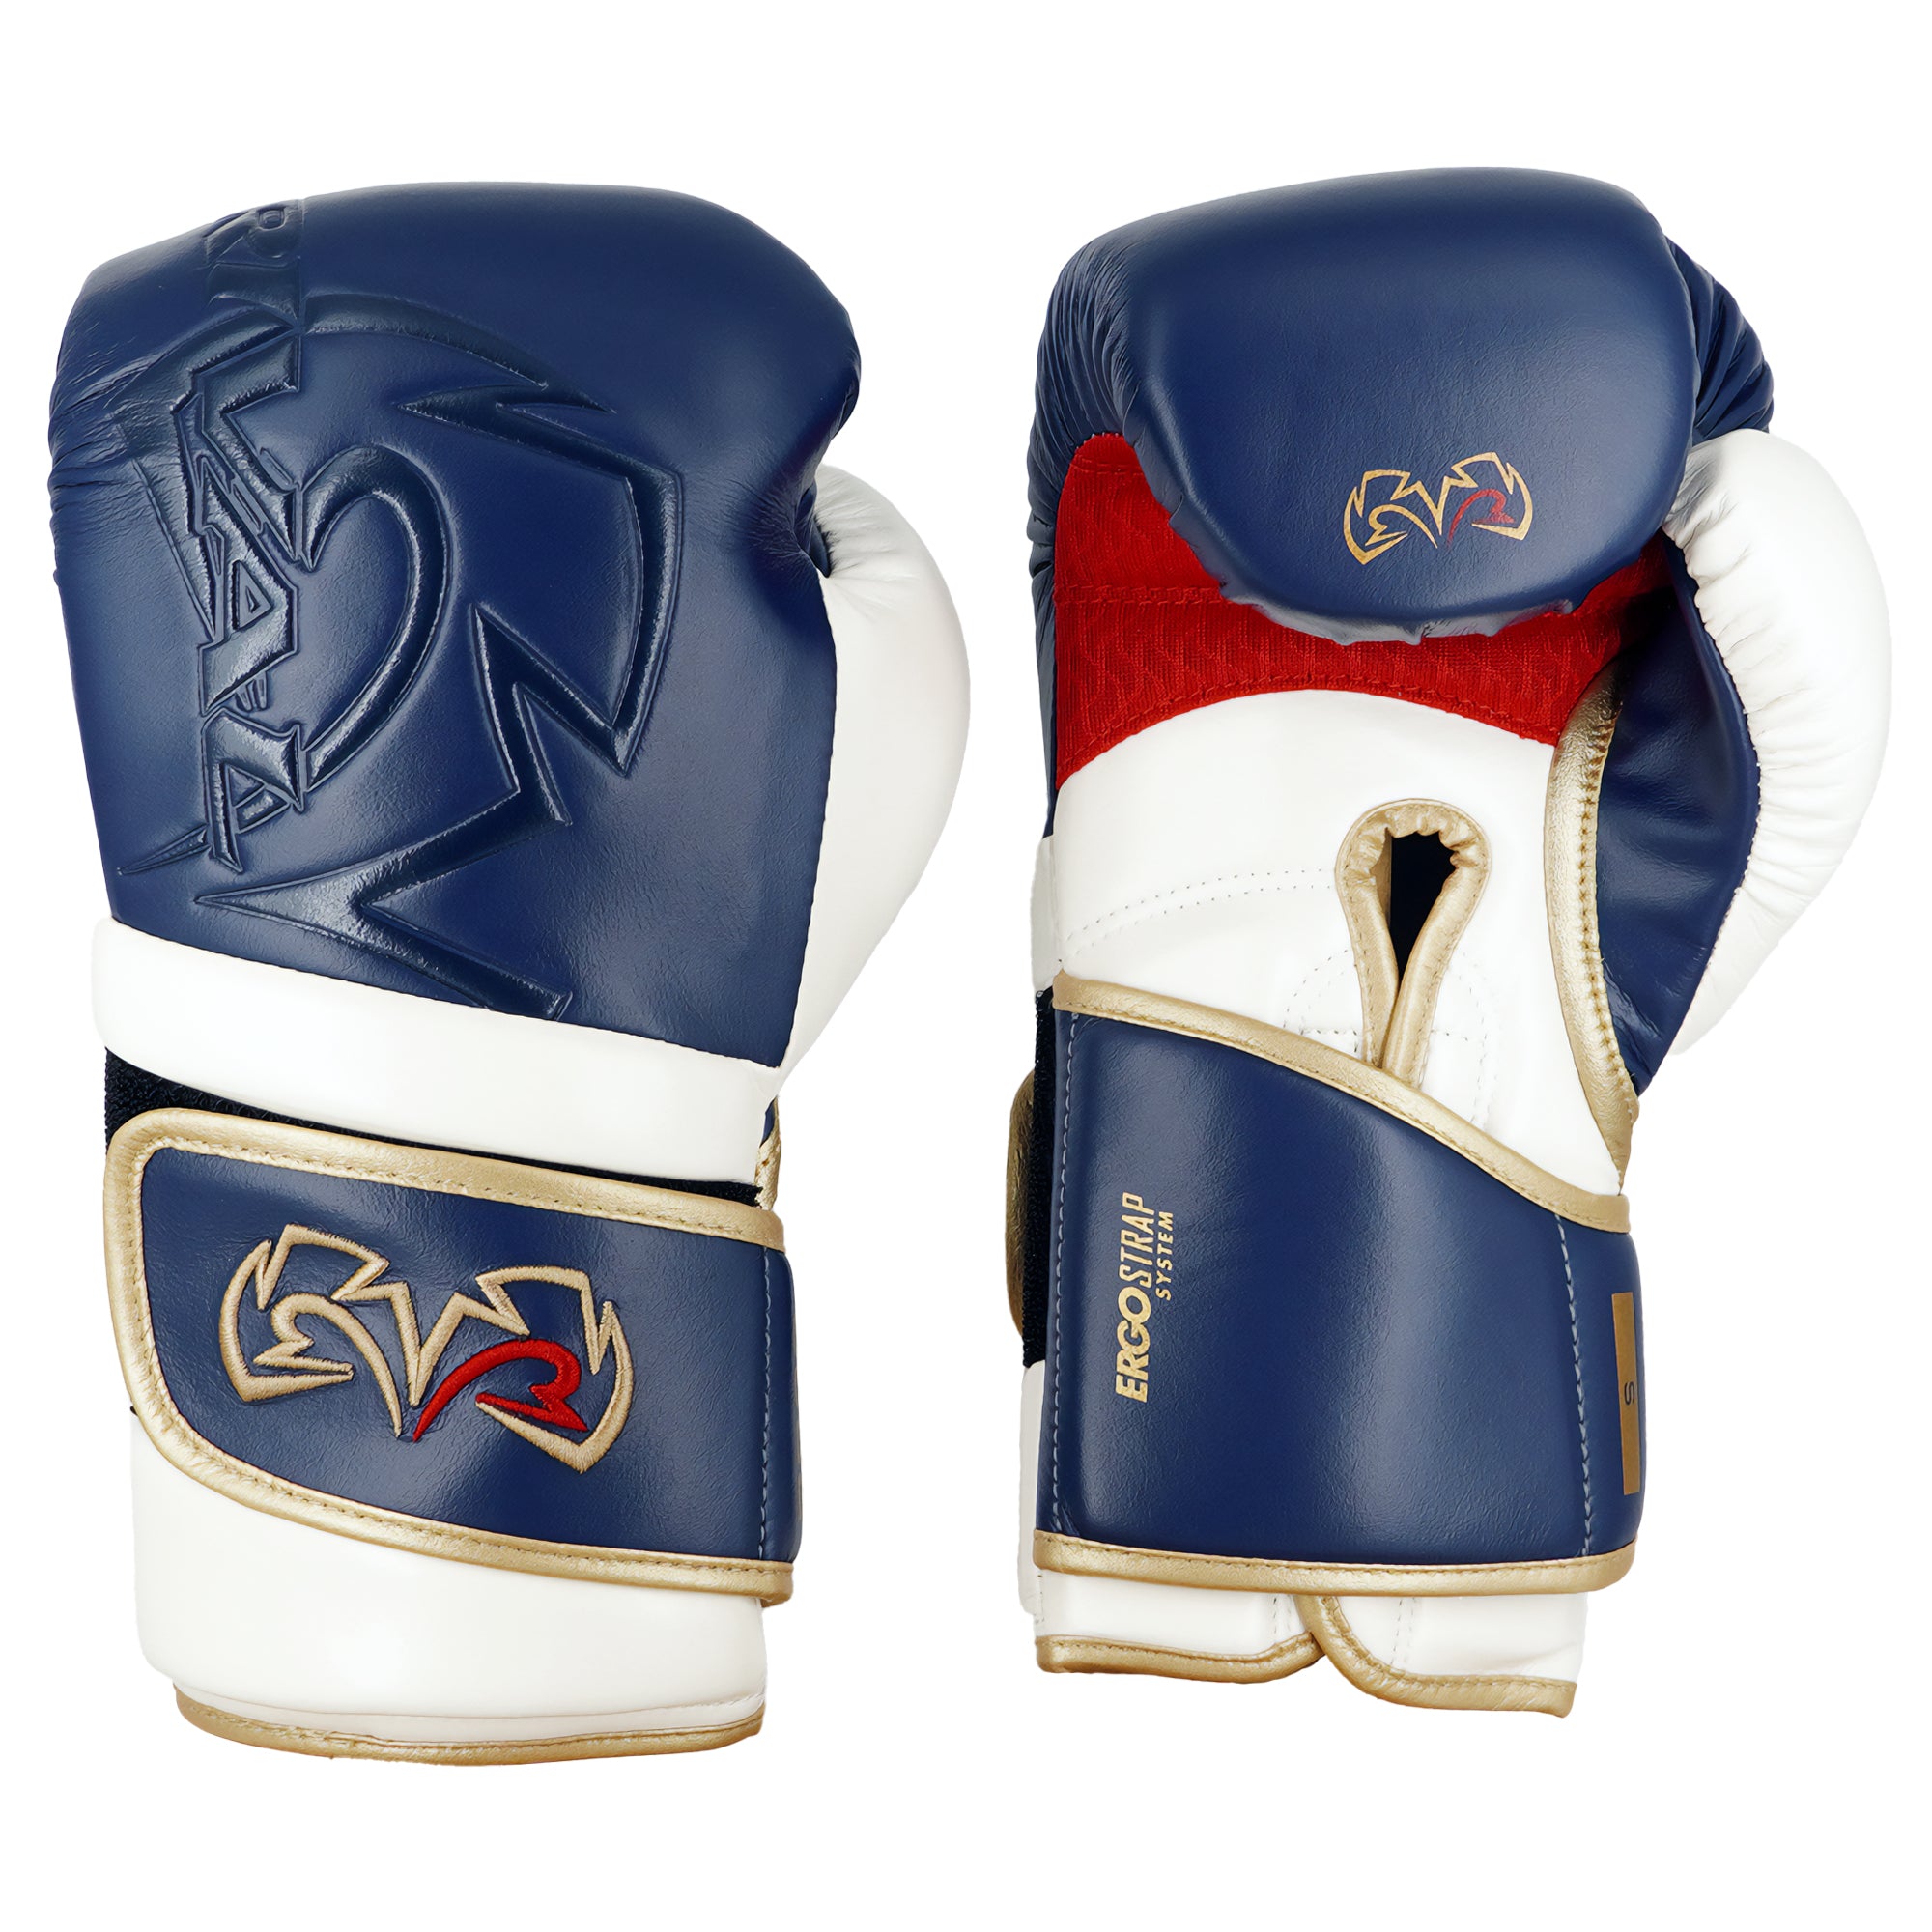 Rival Boxing RB80 Impulse Bag Gloves RIVAL